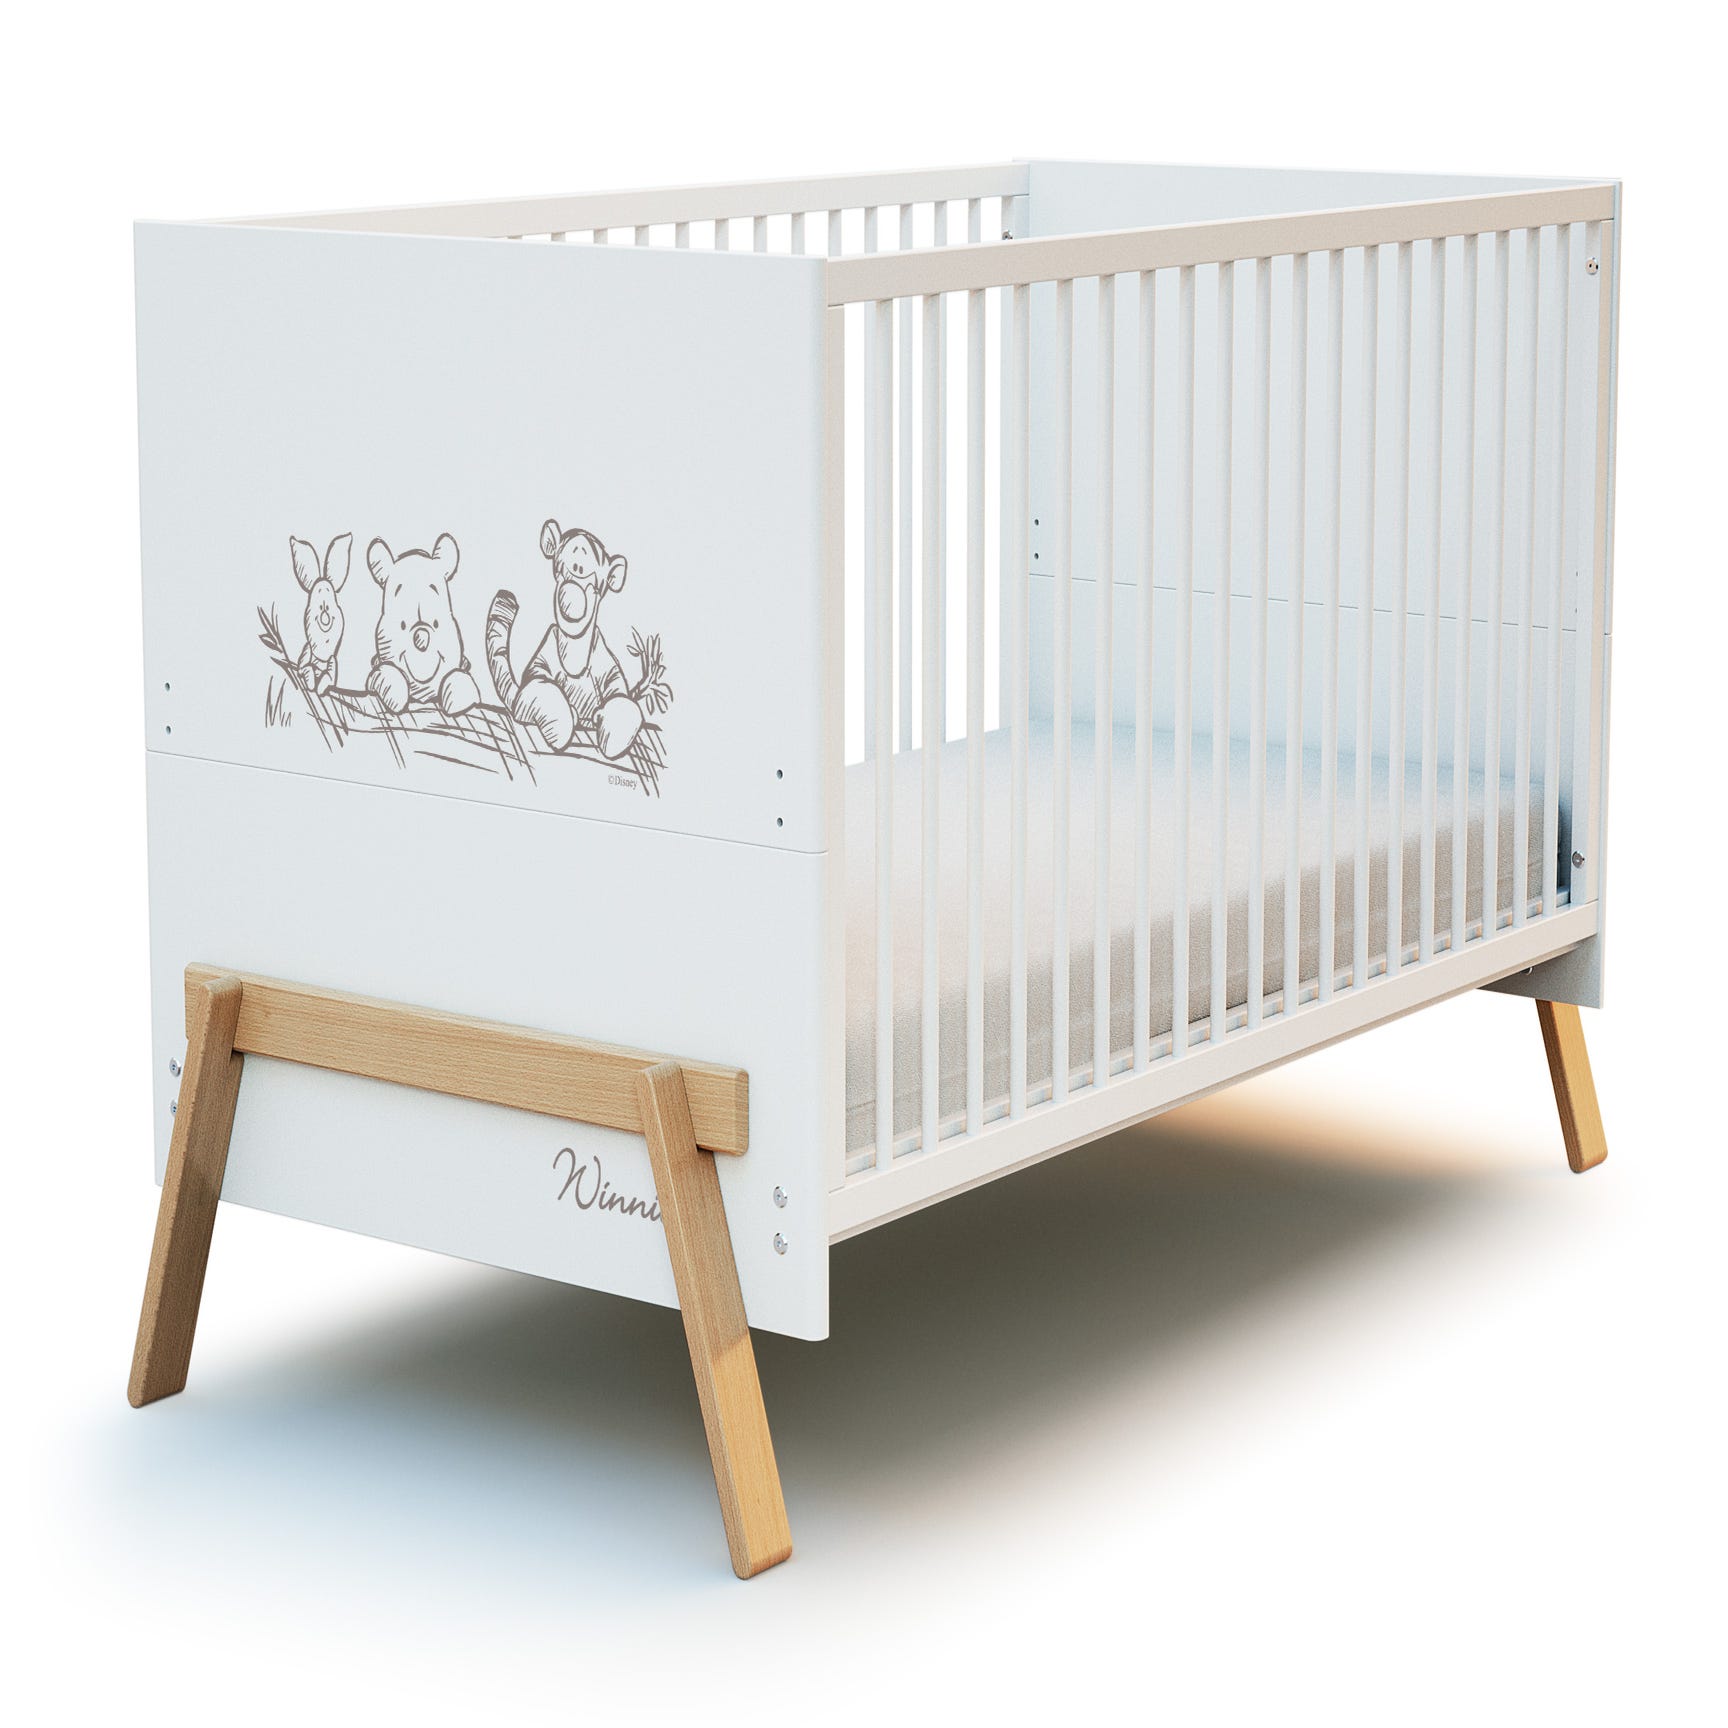 Cuna colecho de madera modelo EVO blanco para bebé